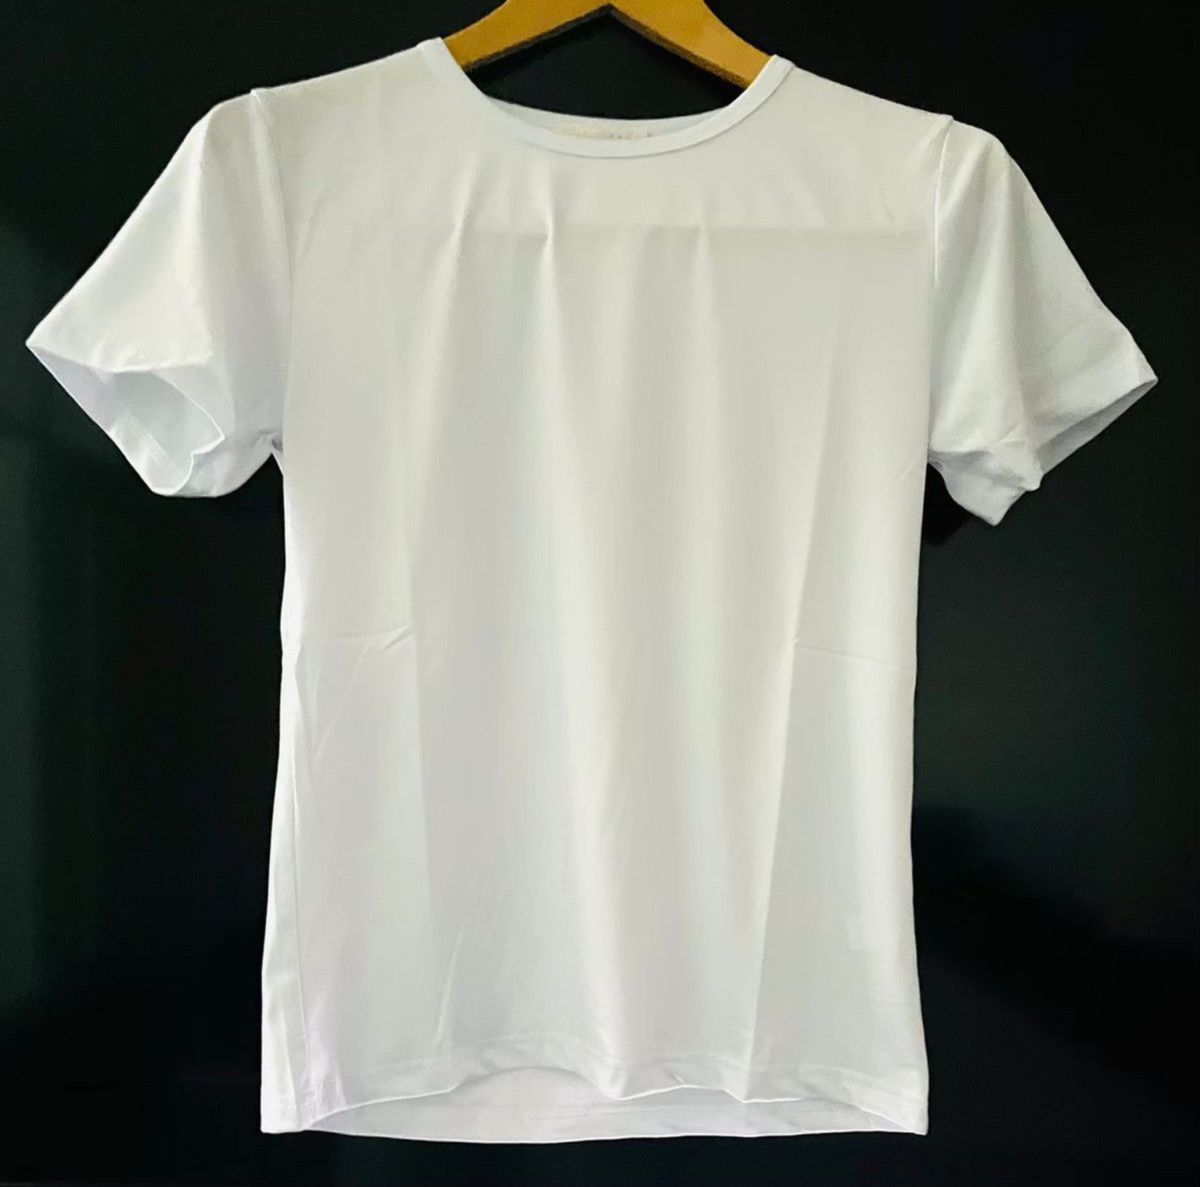 セール Tシャツ メンズ 半袖 無地 吸汗 速乾 インナーシャツ クルーネック